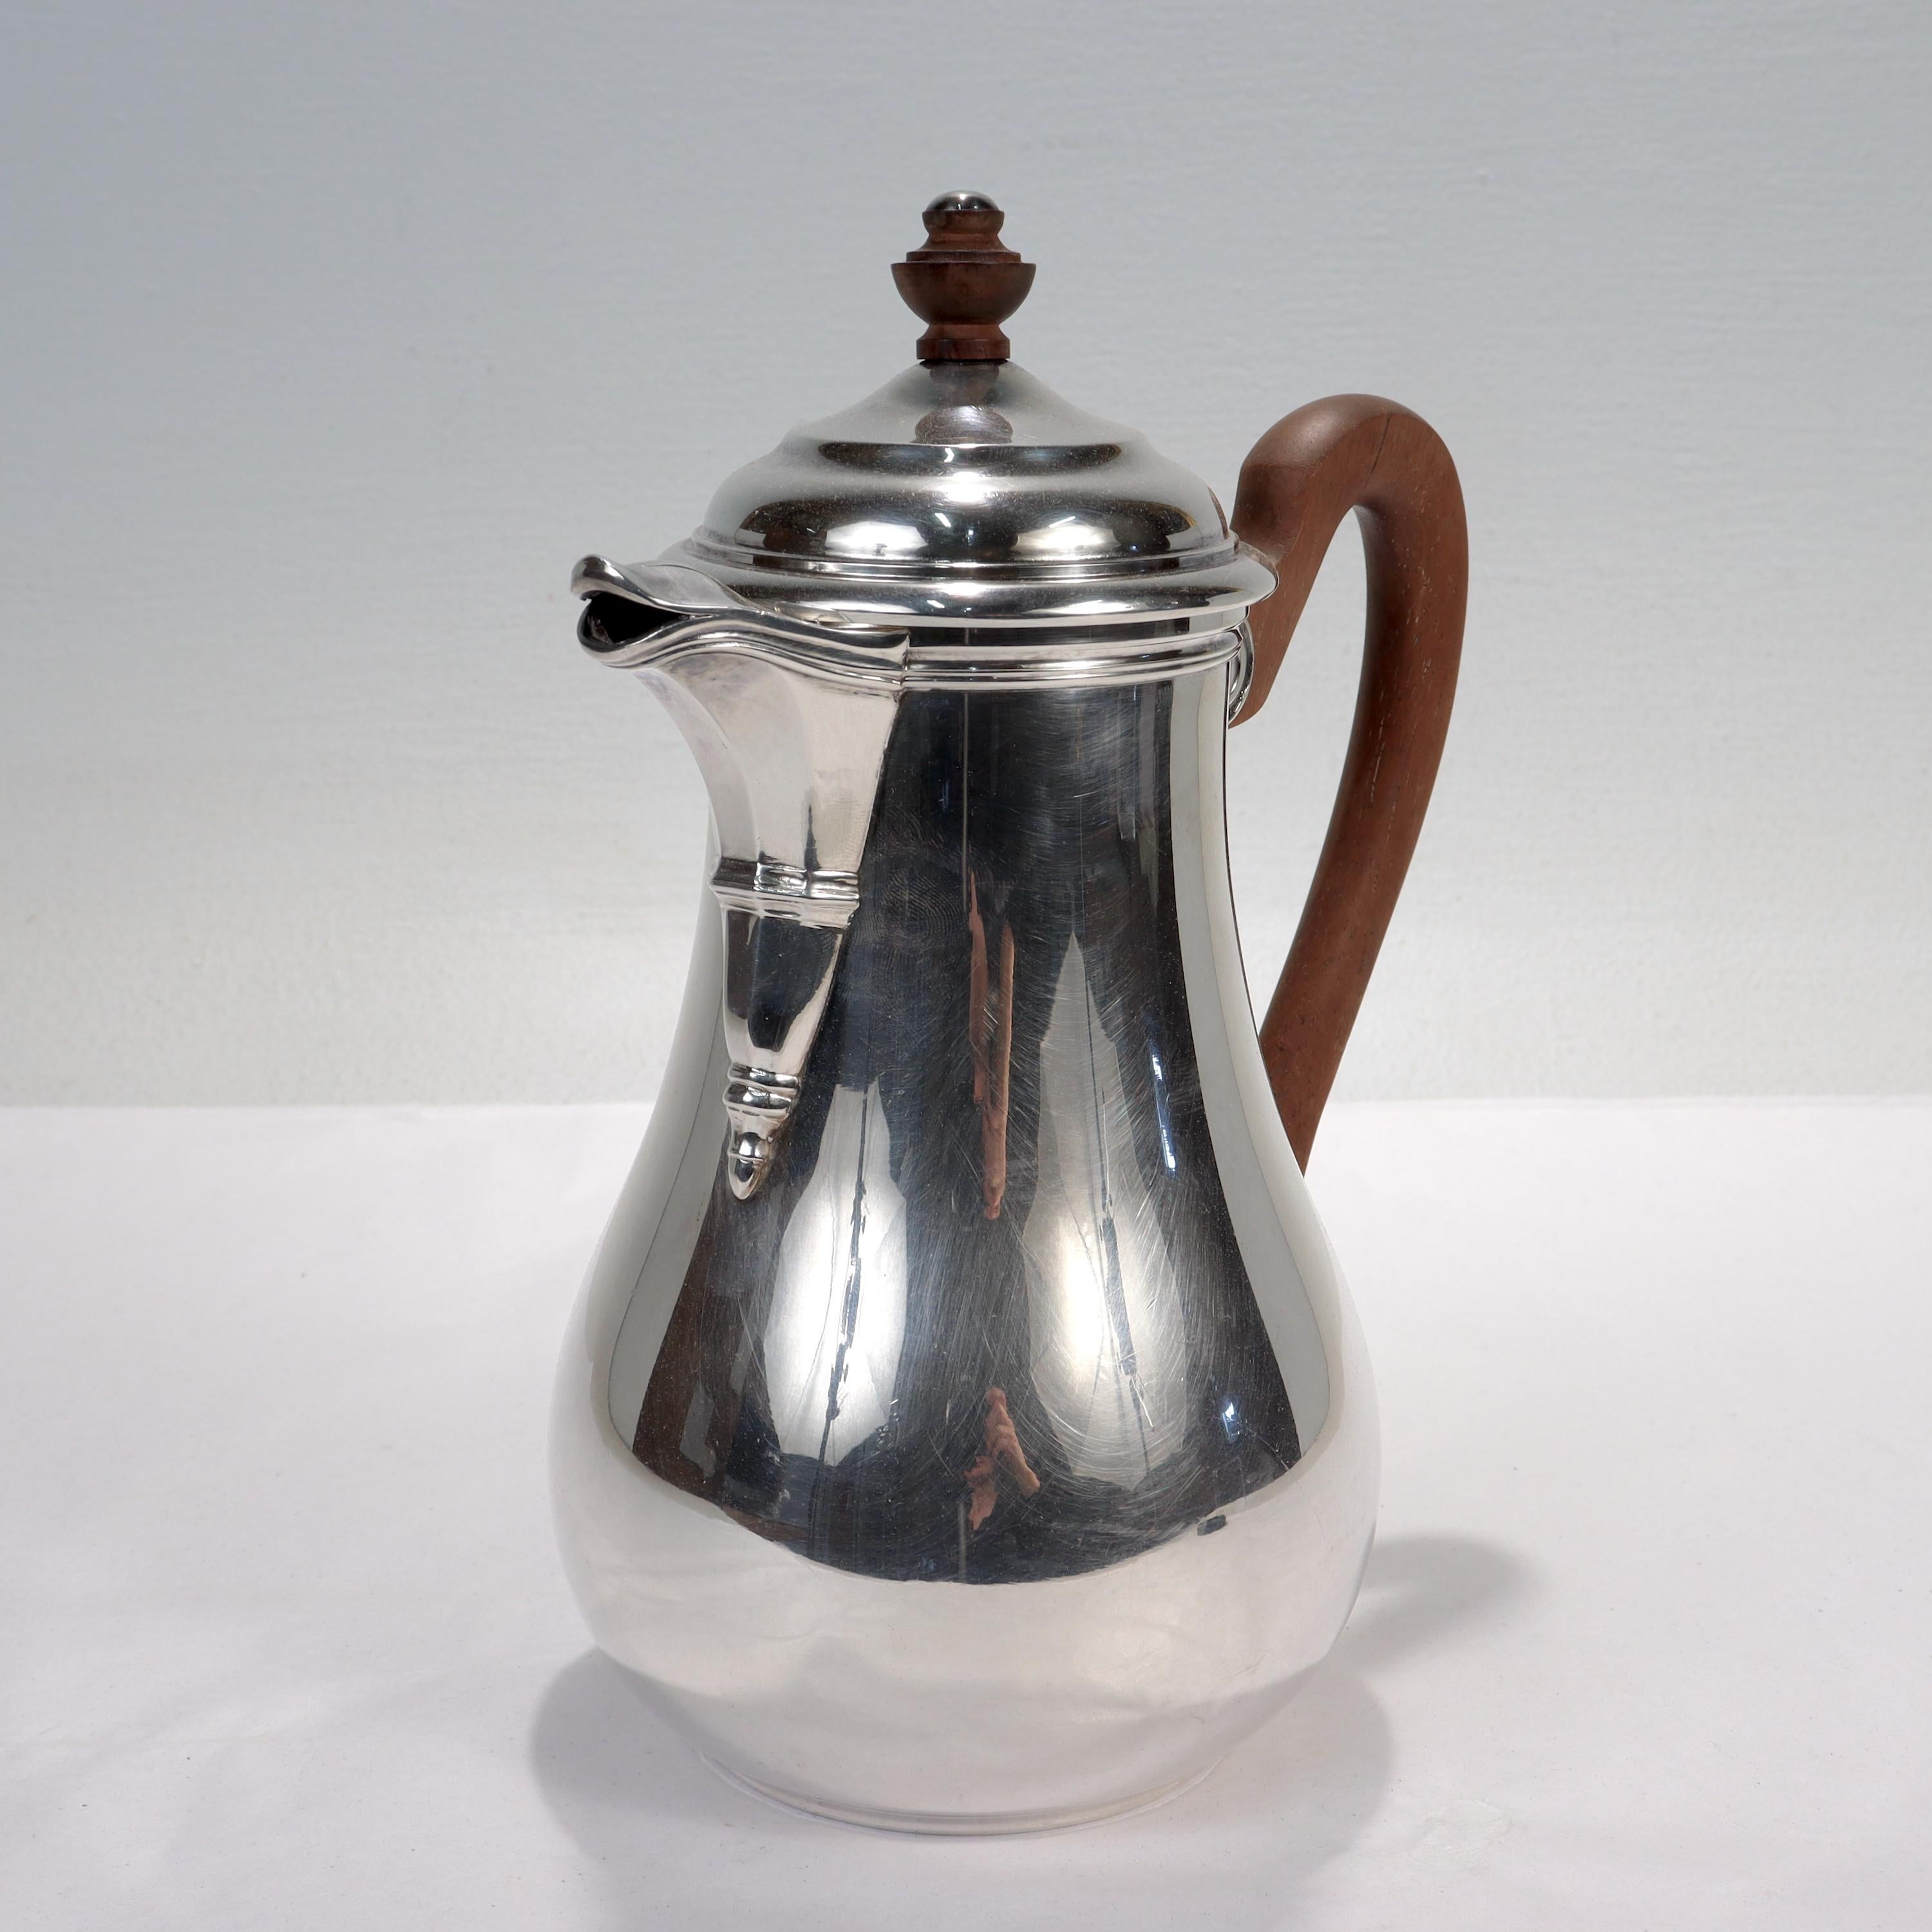 Eine feine französische Kaffeekanne aus Silber.

Von Puiforcat.

Mit vasenförmigem Korpus, gegossenem Ausguss und aufgesetztem Holzgriff.

Auf dem Sockel gestempelt 